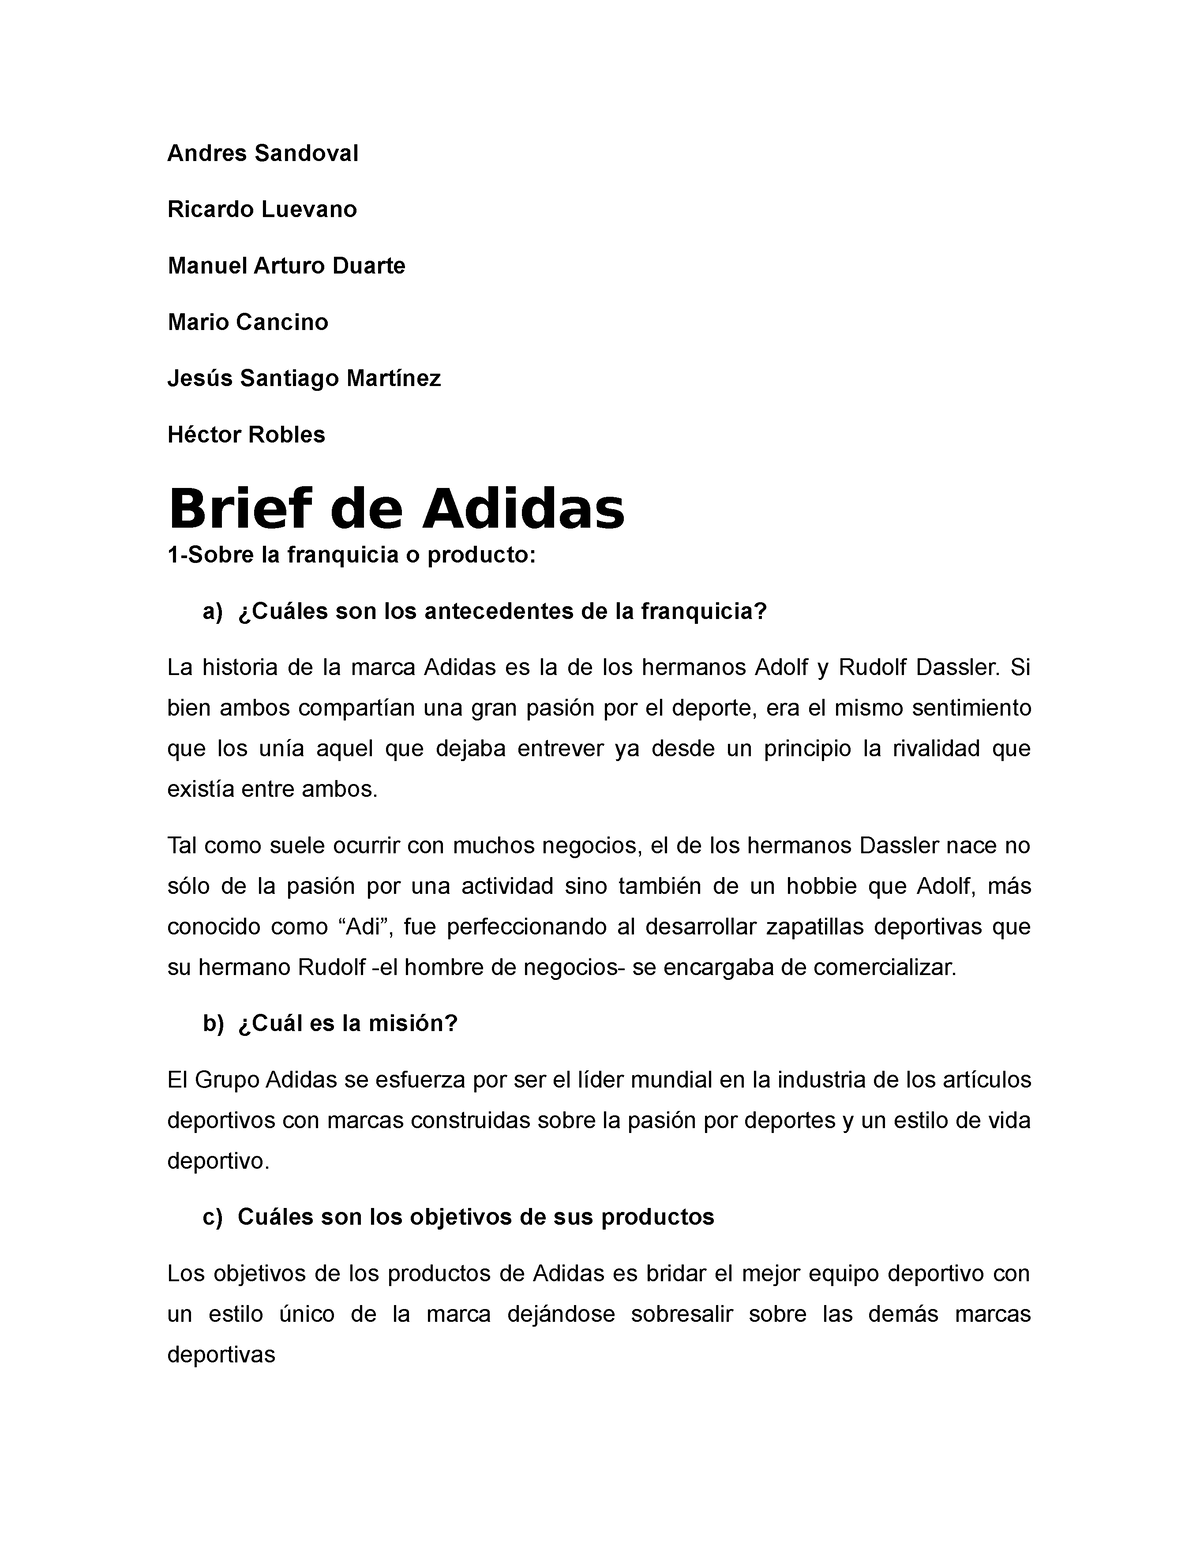 Modernización interrumpir Evaluación Brief de Adidas - reporte de investigación que se realizo en la materia de  microeconomia proyecto - Studocu